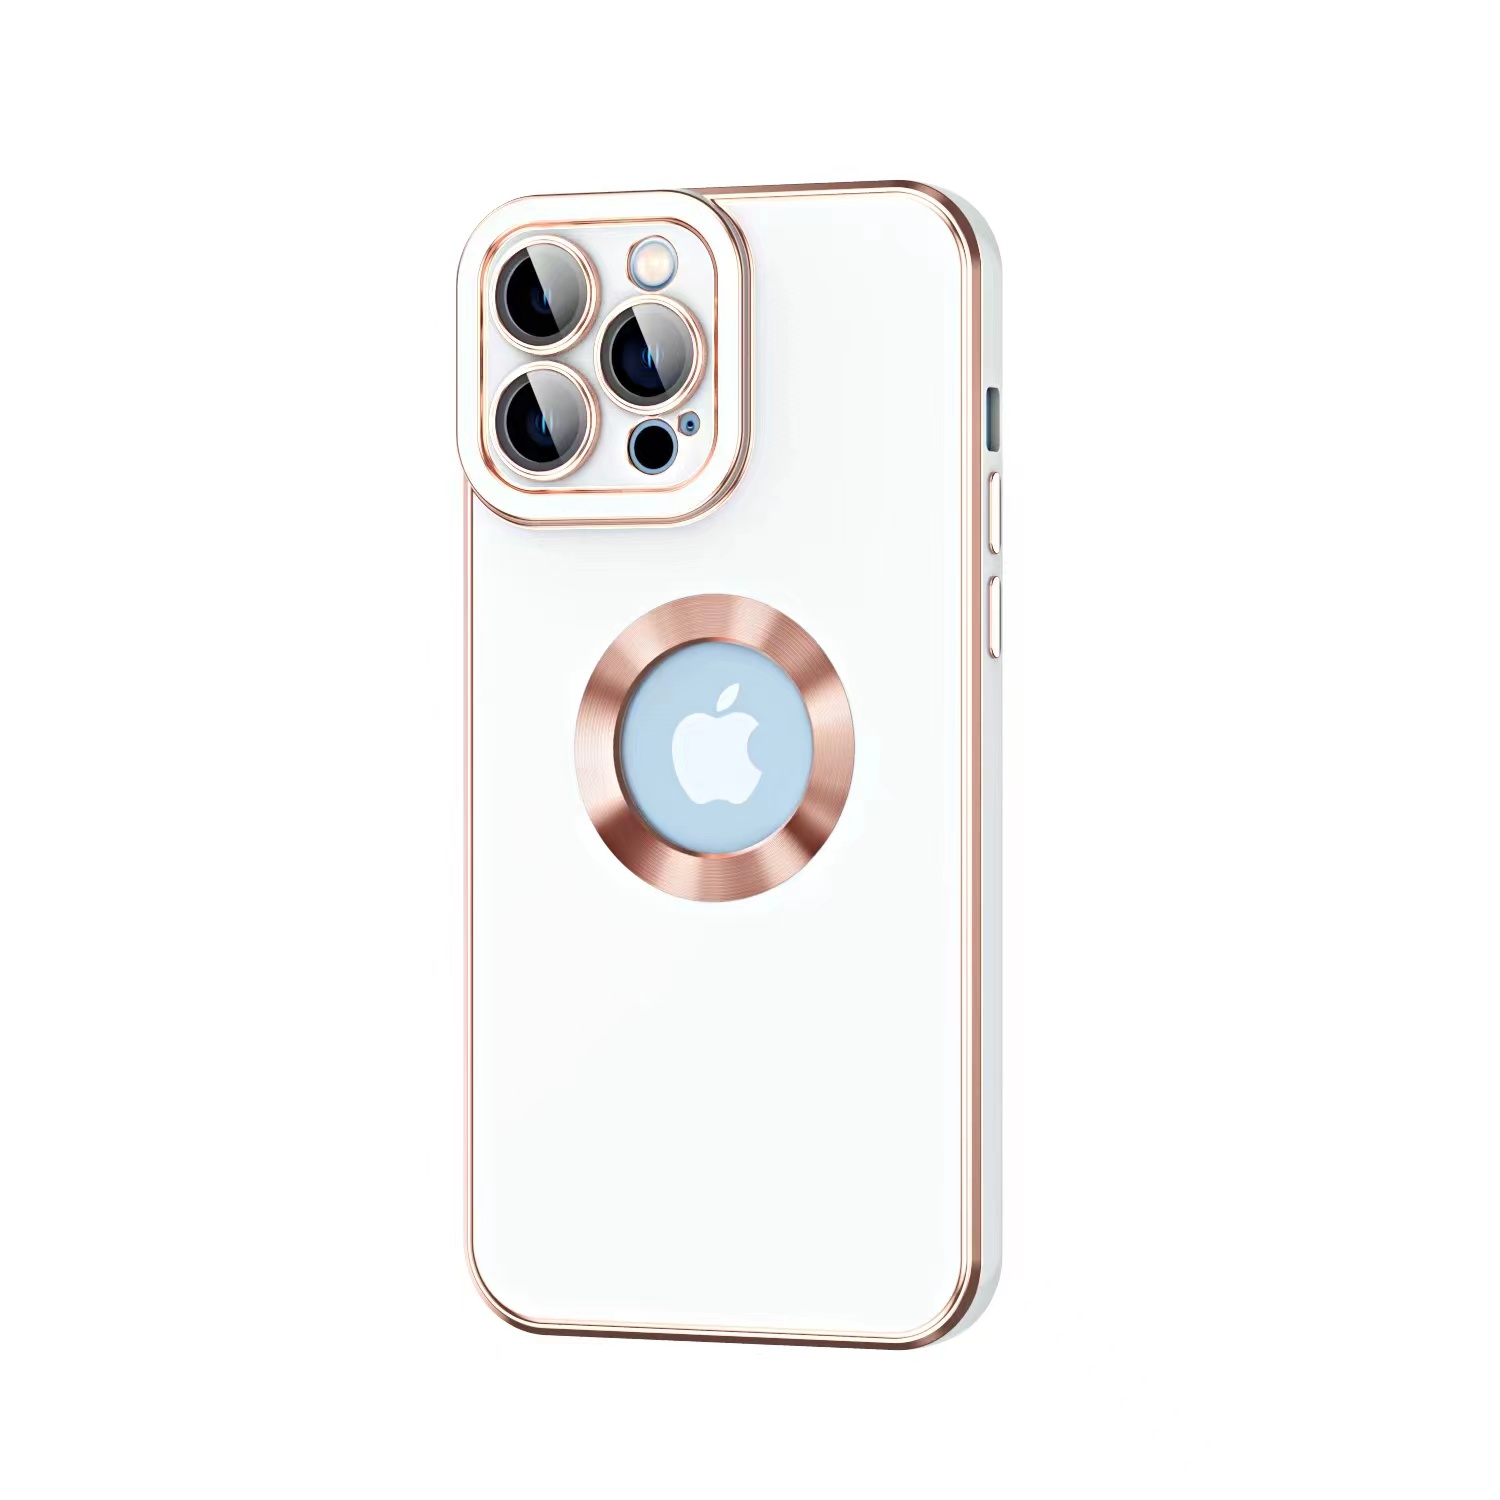 KNY Apple İphone 12 Pro Kılıf Kamera Korumalı Renkli Logo Açık Tasarım Kongo Kapak